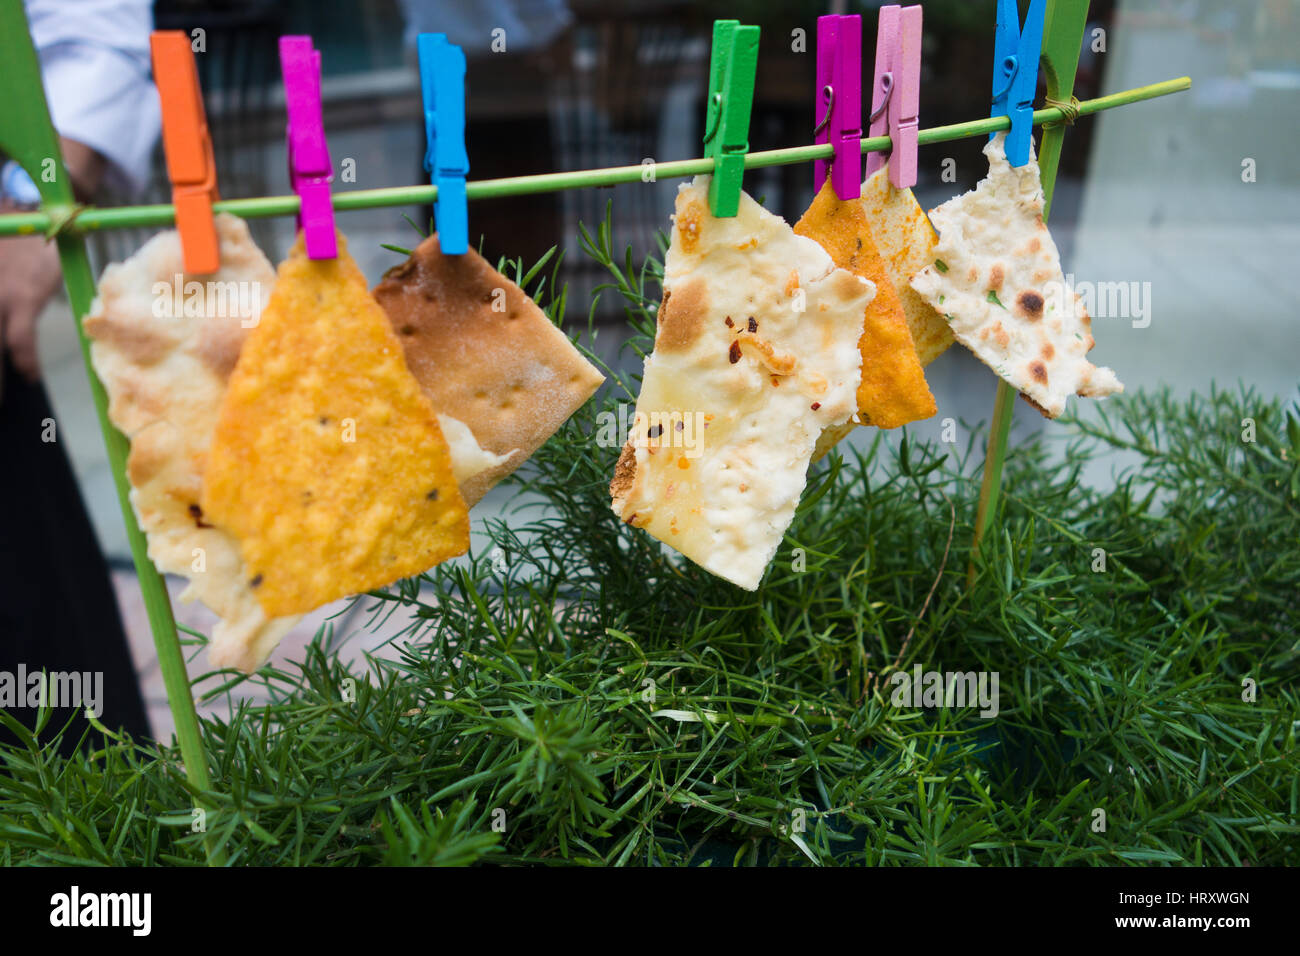 Kreative foodstyling von Nachos und Fladenbrot hing mit farbigen Clips Stockfoto